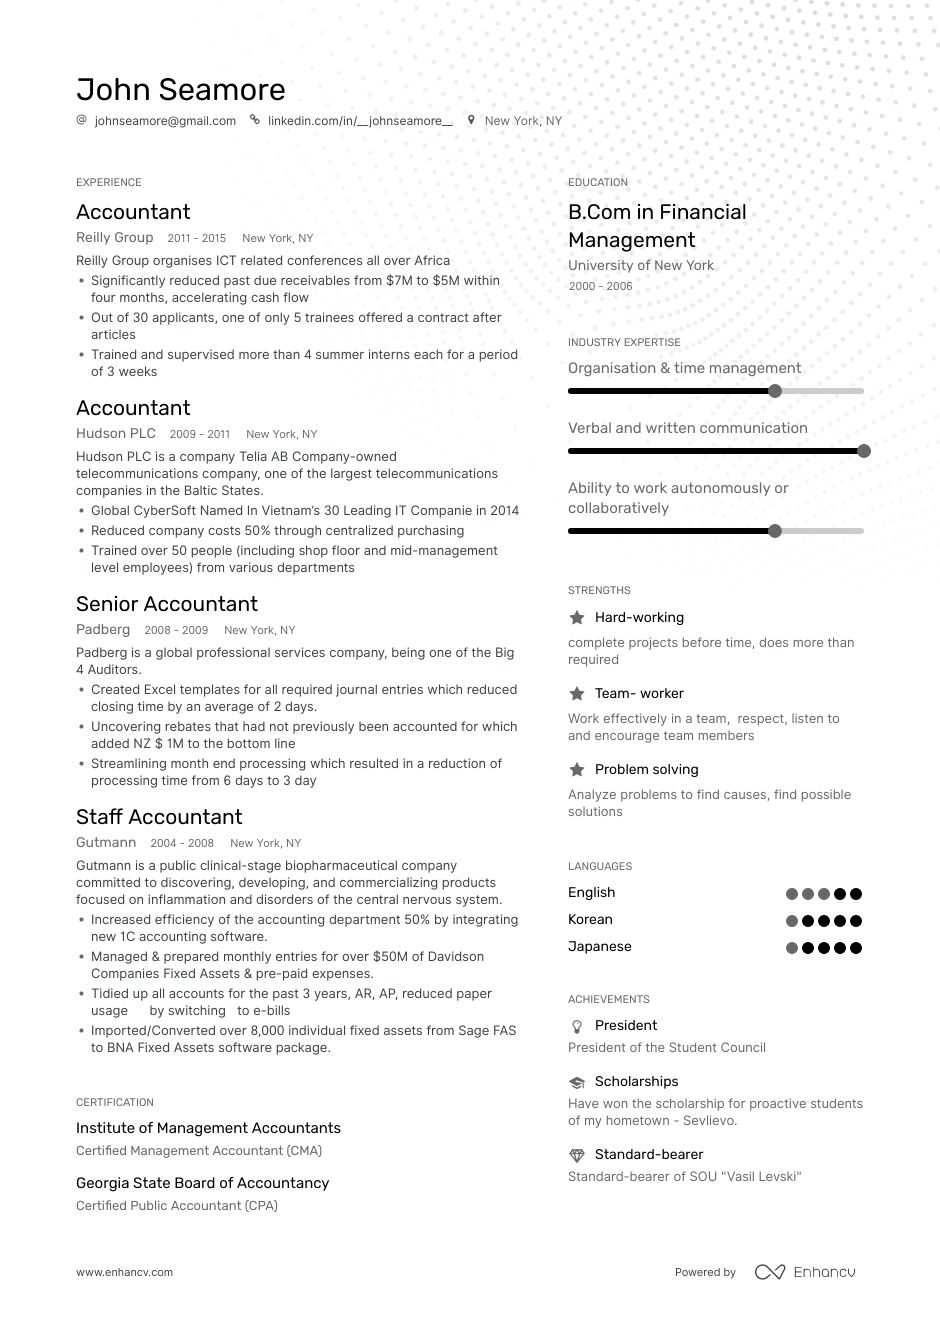 General Accountant Resume from enhancv.com